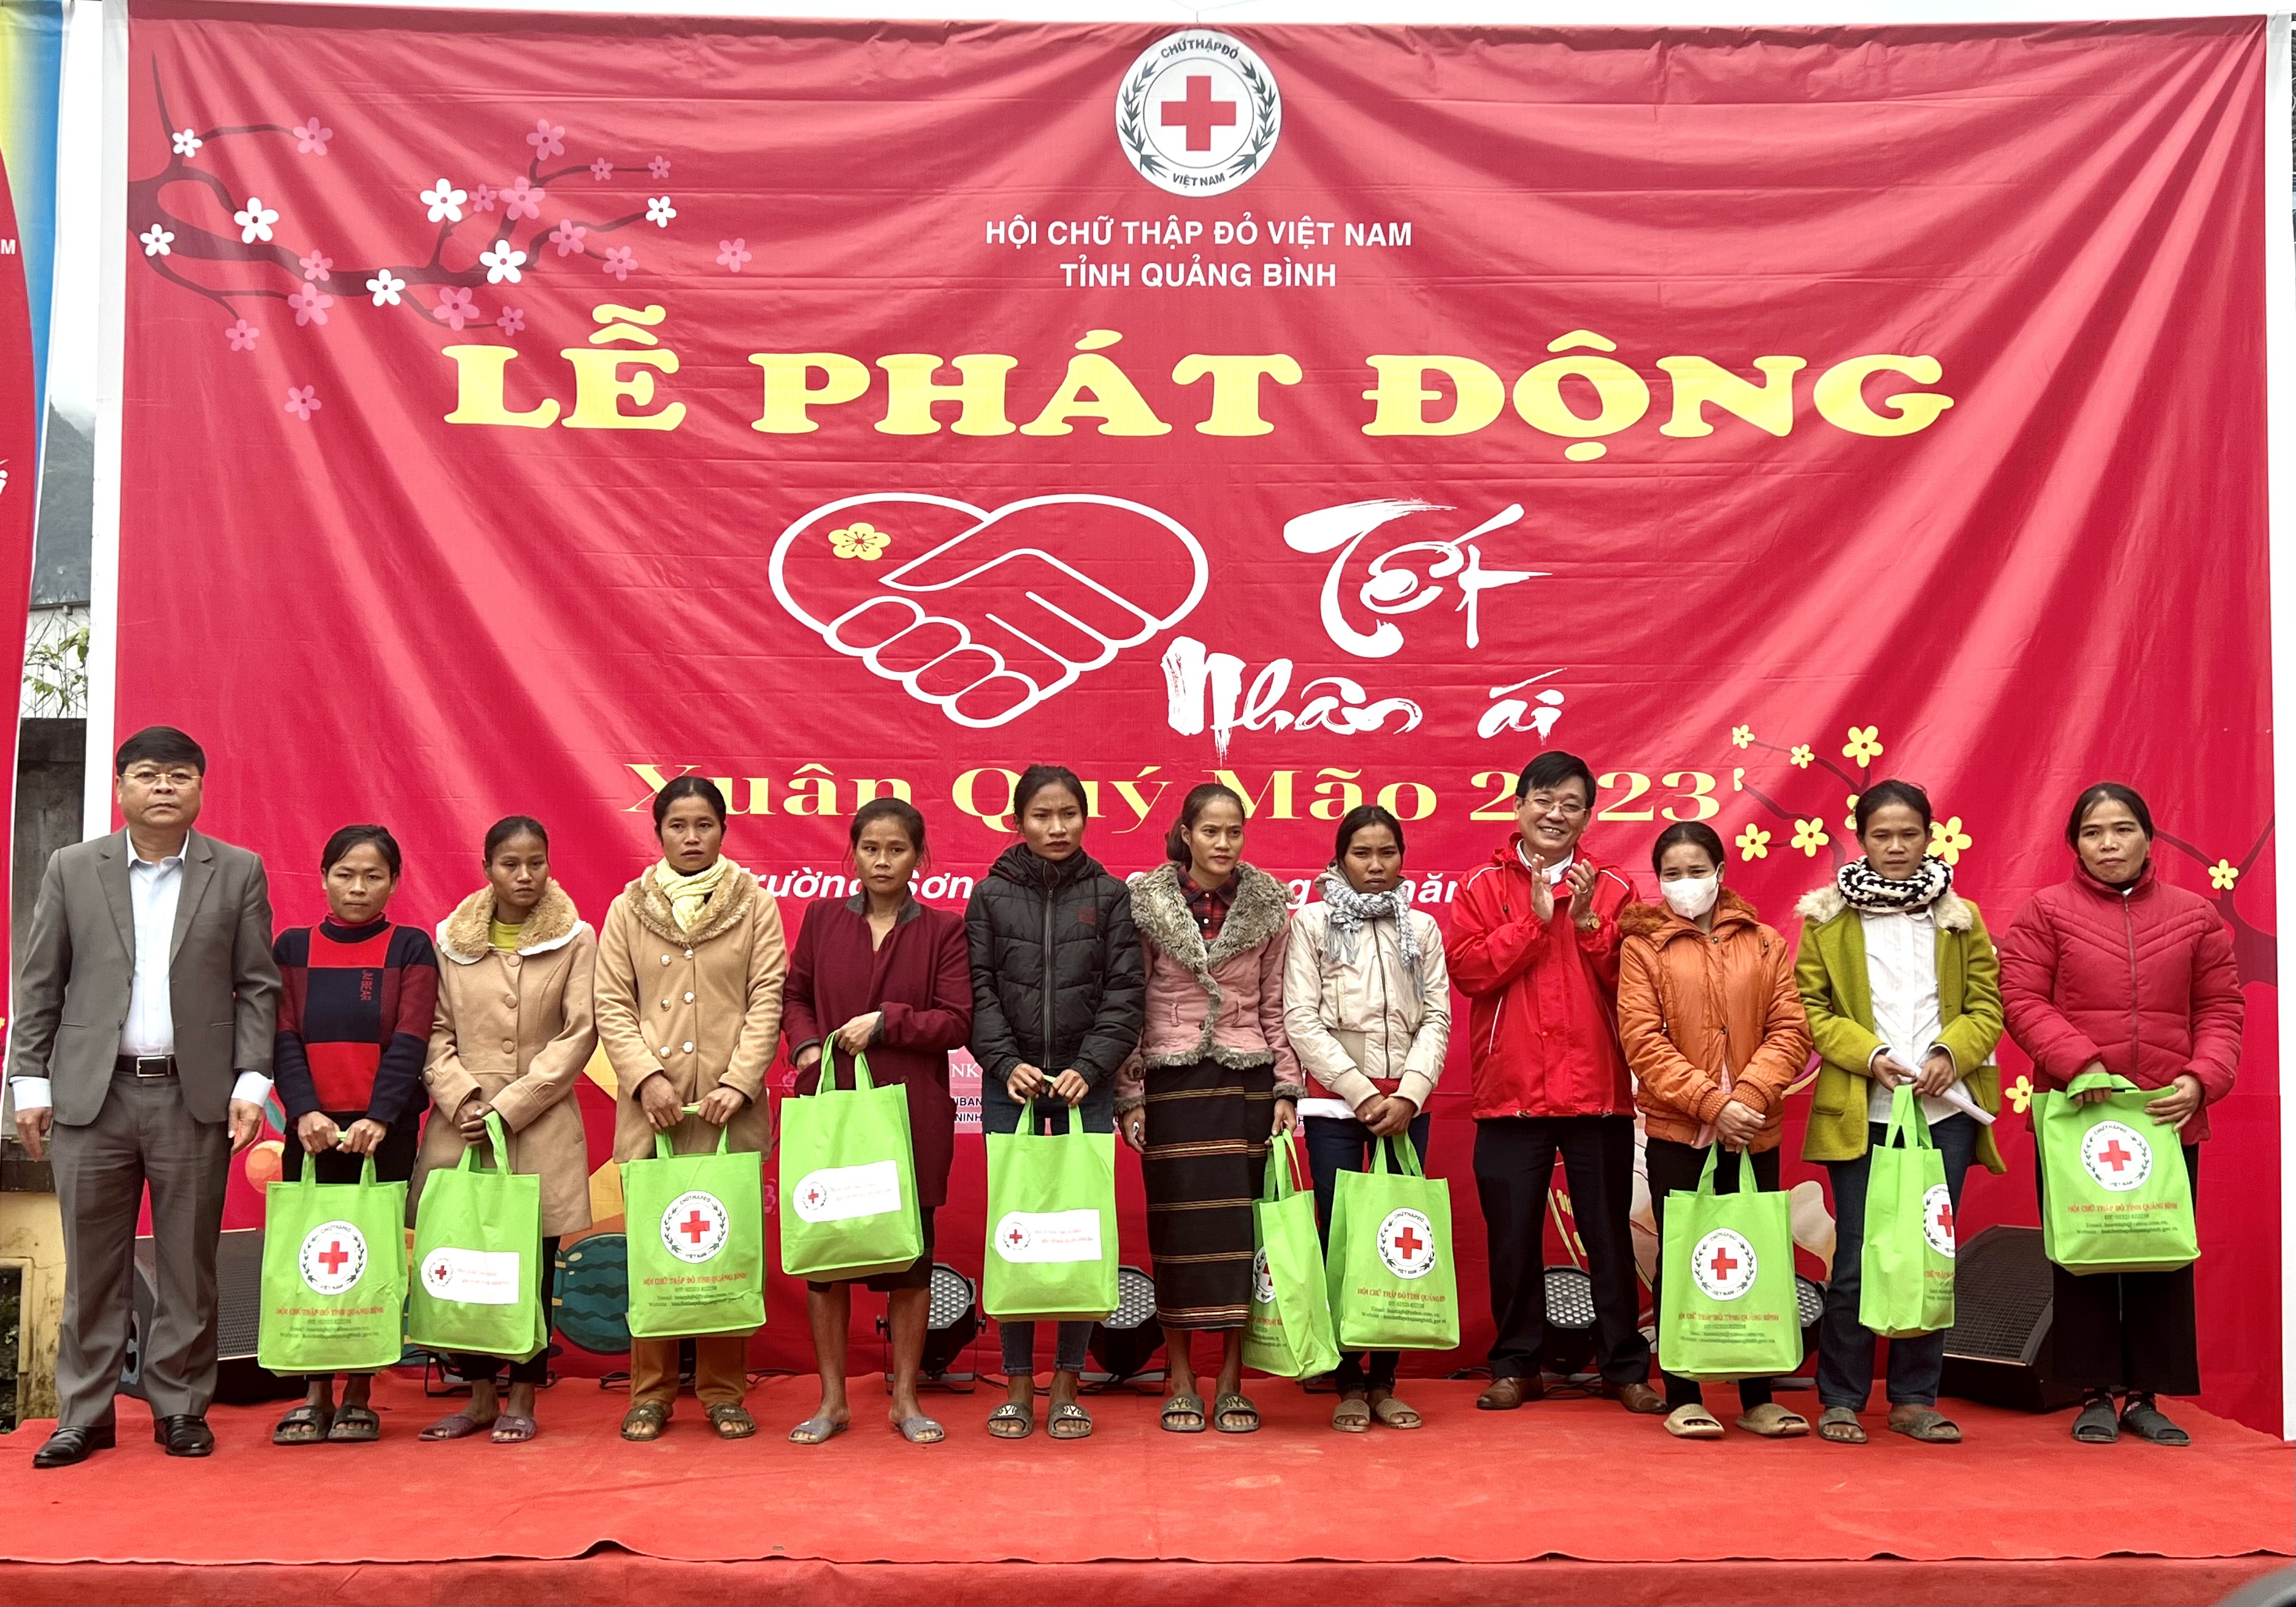 Đại diện lãnh đạo Hội CTĐ tỉnh và huyện Quảng Ninh trao quà cho các hộ dân có hoàn cảnh khó khăn xã Trường Sơn tại lễ phát động phong trào “Tết nhân ái” Xuân Quý Mão 2023.